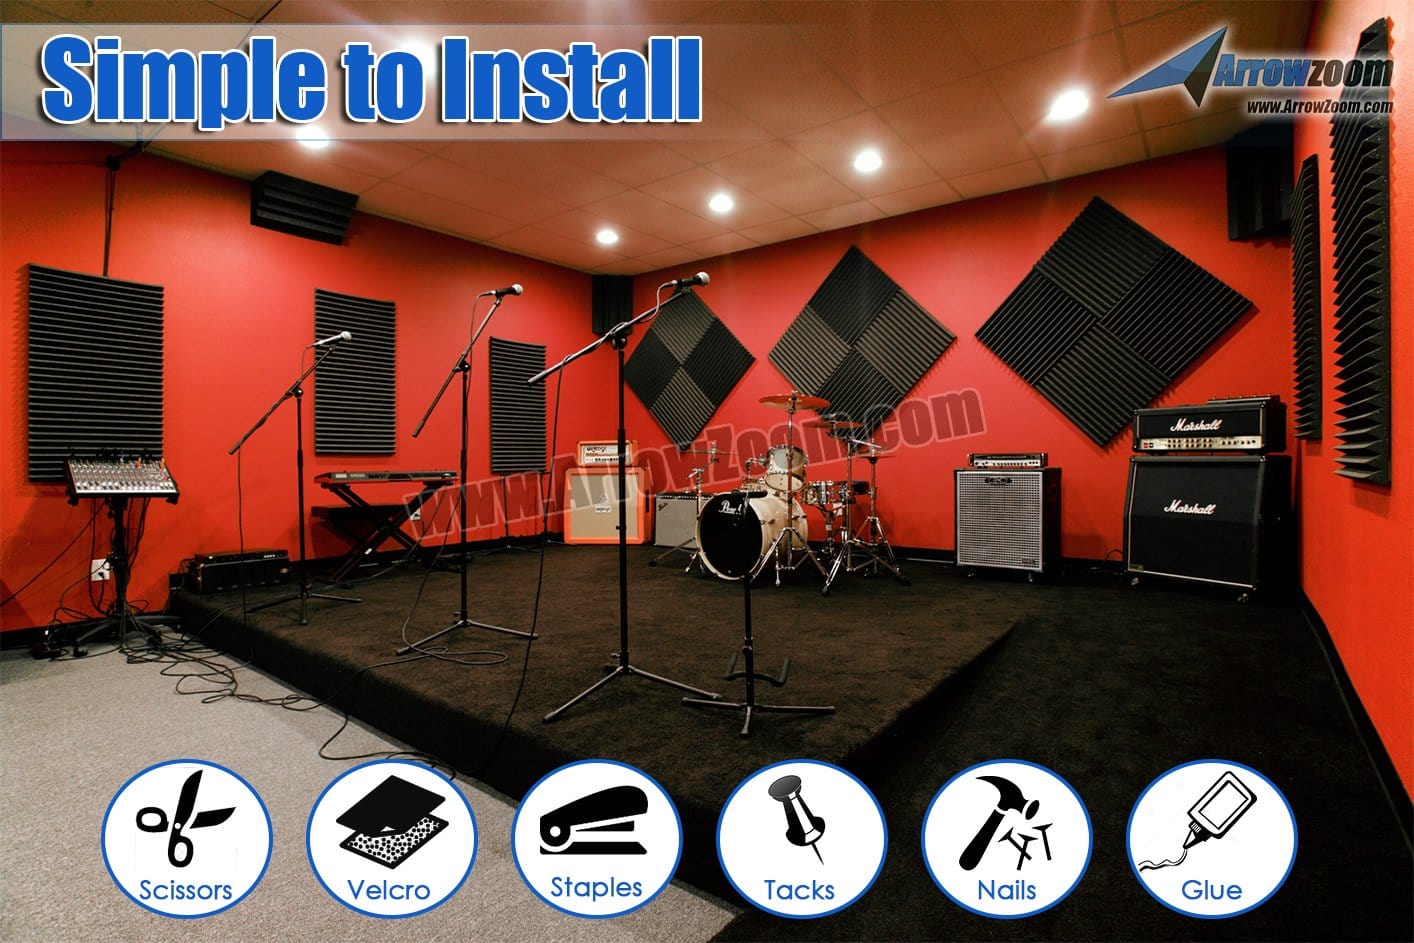 New 24 pcs Color Combination Wedge Tiles Acoustic Panels Sound Absorption Studio Soundproof Foam KK1134